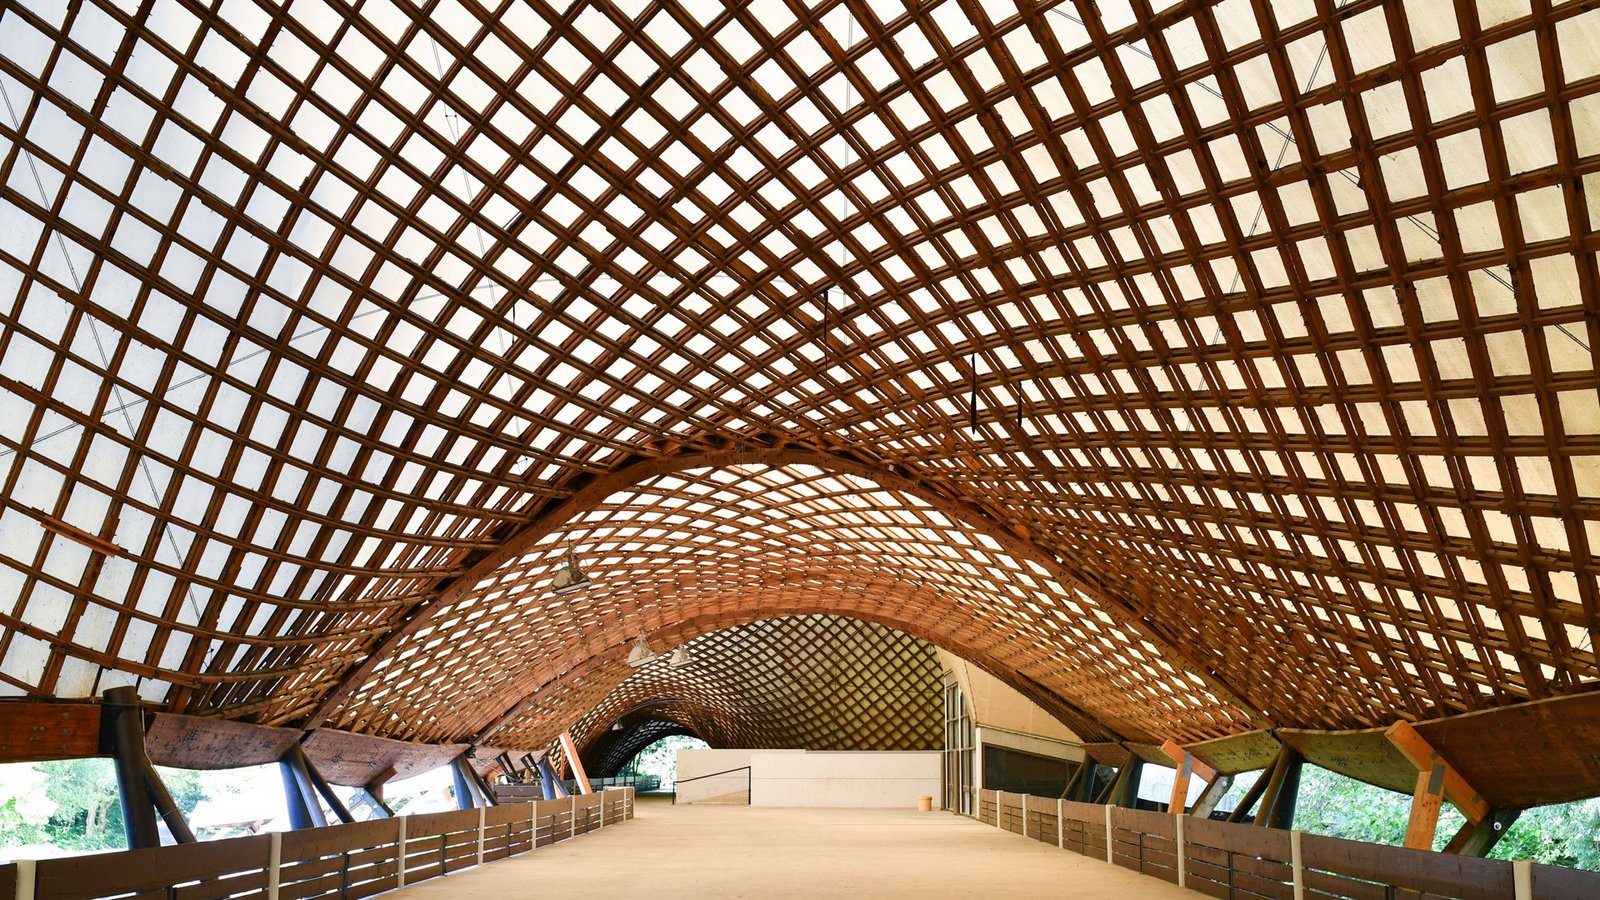 Wird für viele Millionen Euro saniert – die Multihalle Mannheim  mit der   größten freitragenden Holzgitterschalenkonstruktion der Welt, entworfen von Frei Otto.Foto: dpa/Uwe Anspach